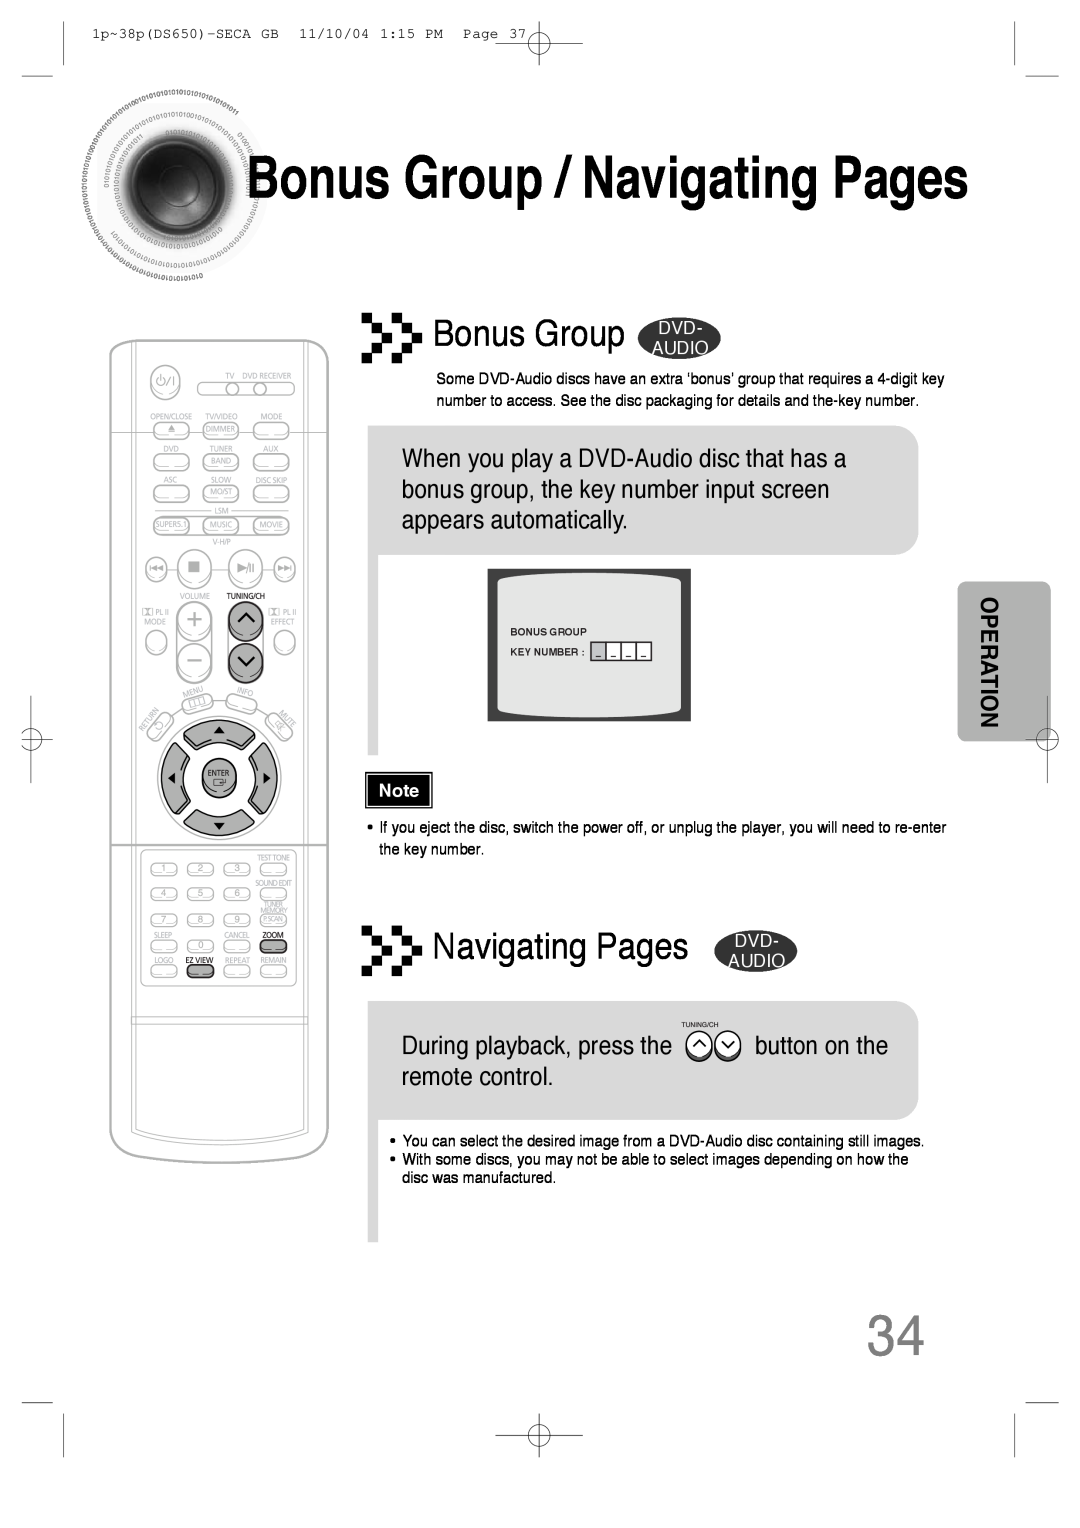 Samsung HT-DS650 instruction manual BonusGroup / Navigating Pages, Bonus Group DVD, Navigating Pages DVD 